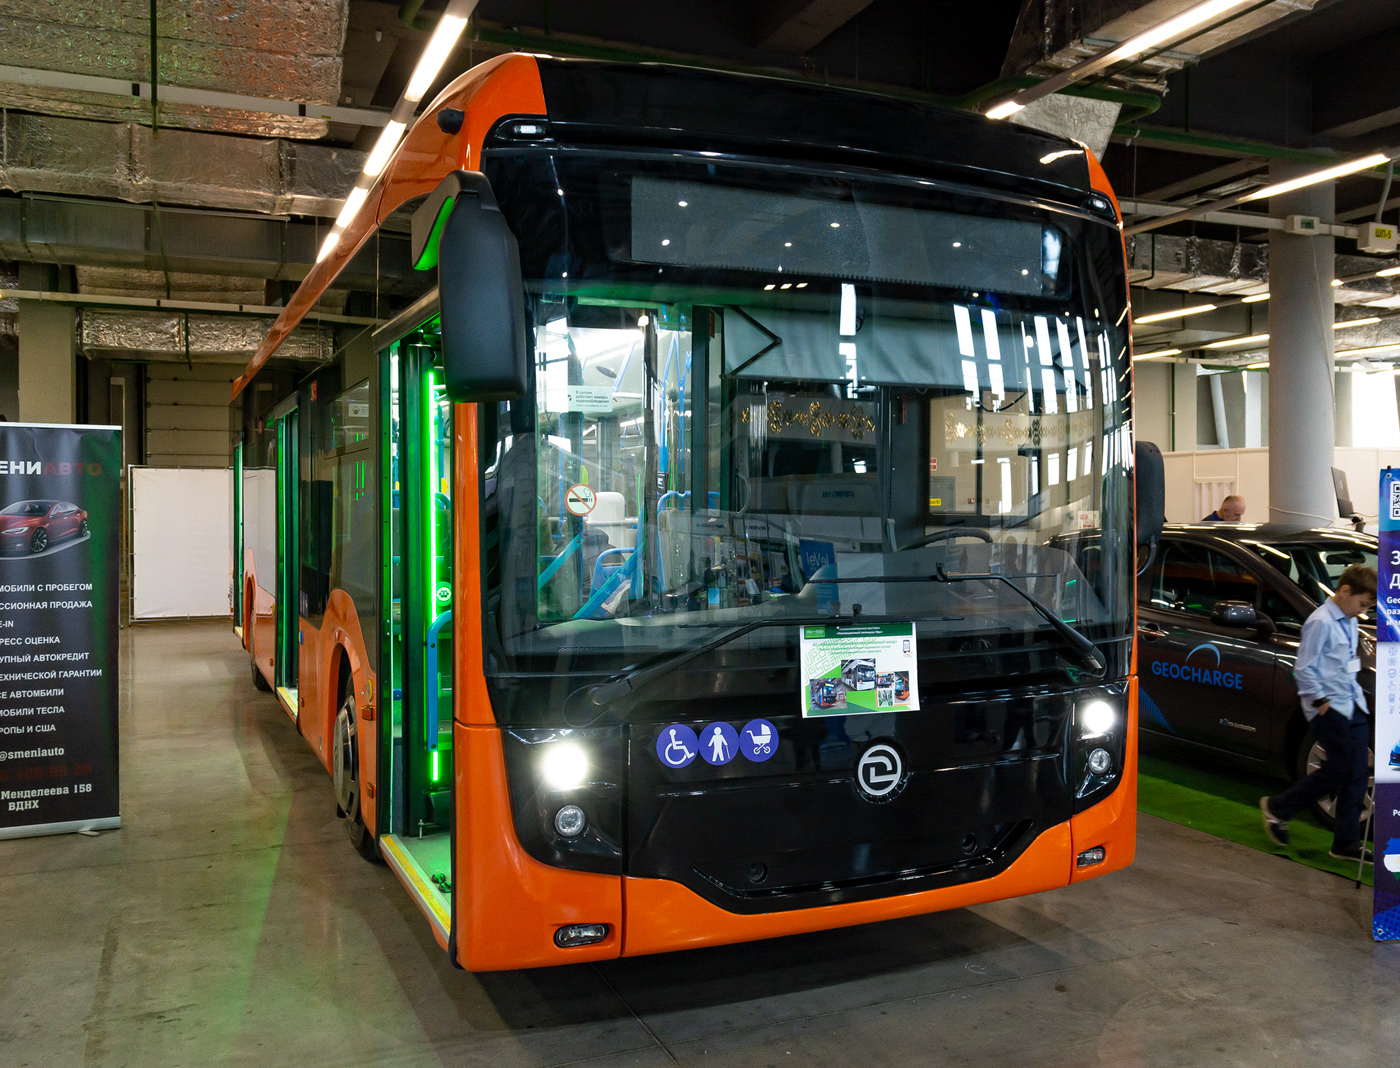 Oufa, UTTZ-6242 N°. 6242; Oufa — New BTZ trolleybuses